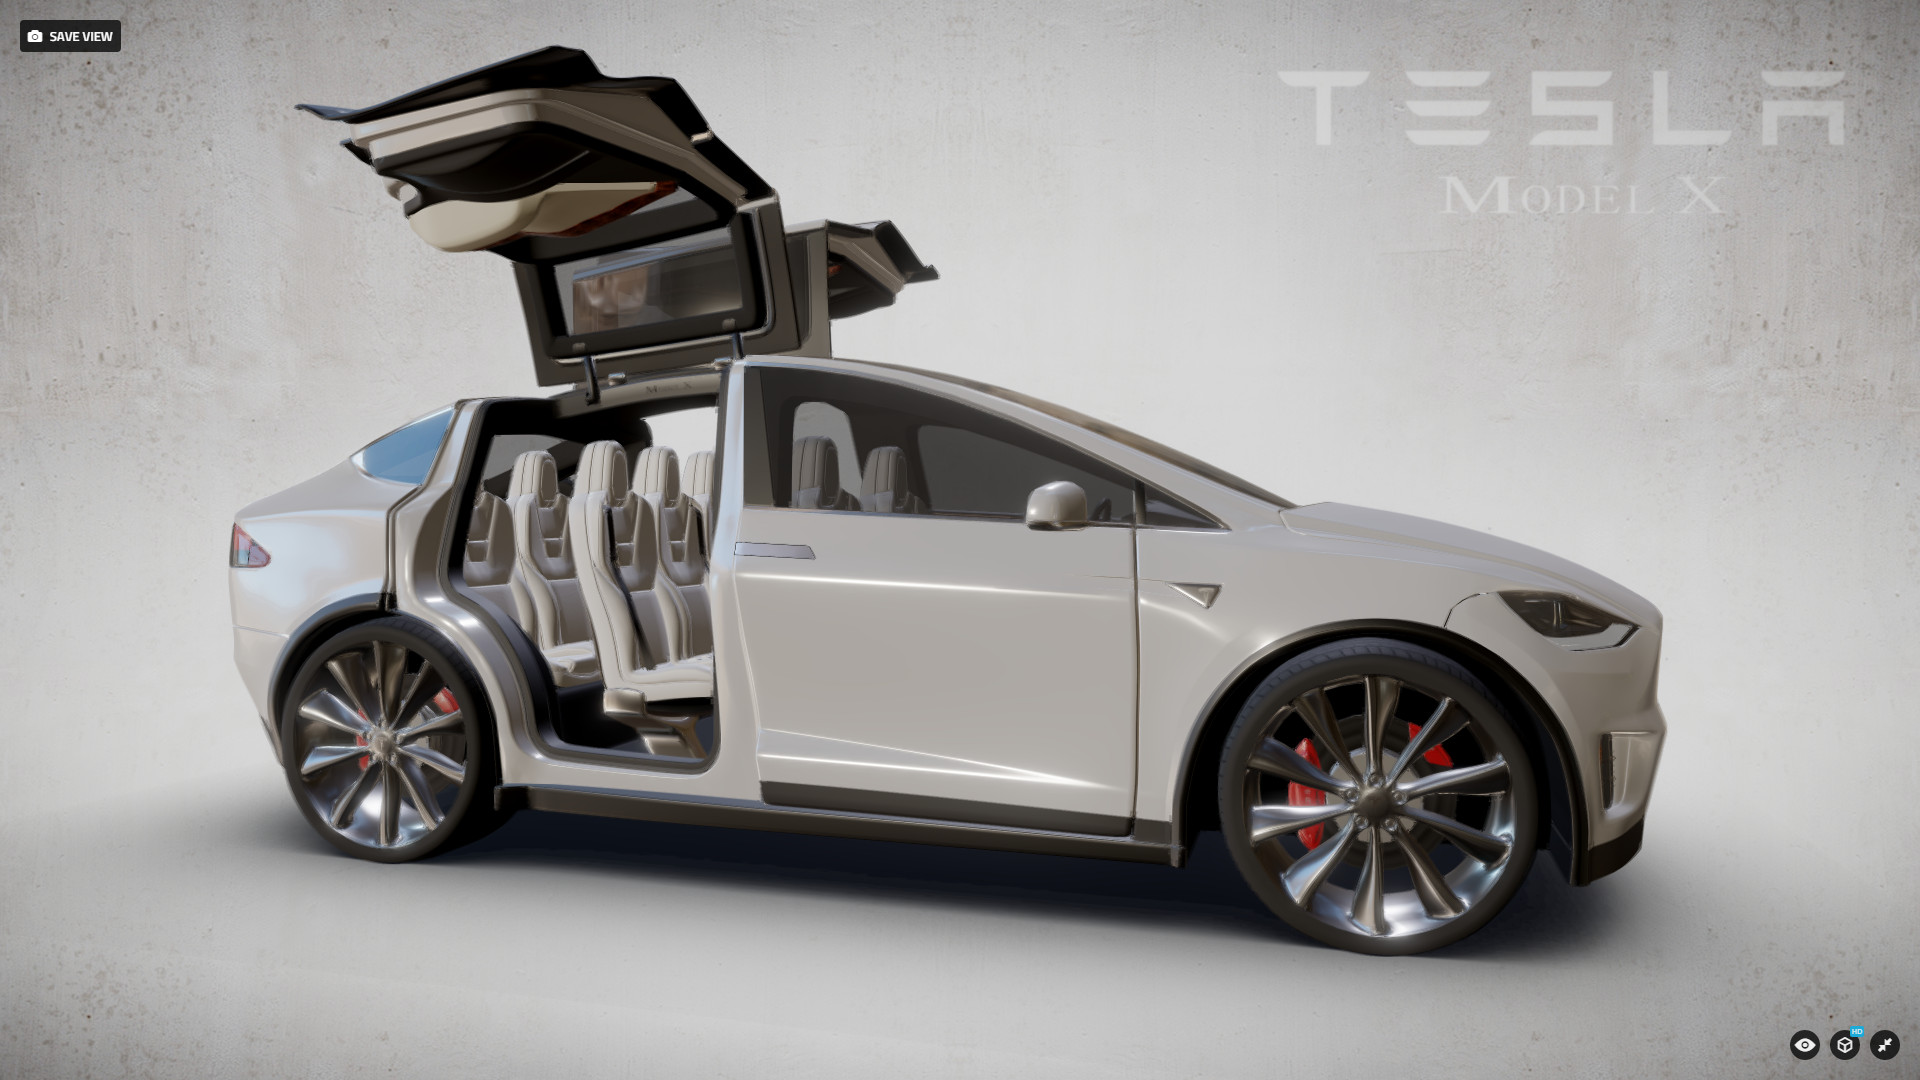 adjust However genius Tesla Model X - Finished Projects - Blender Artists Community